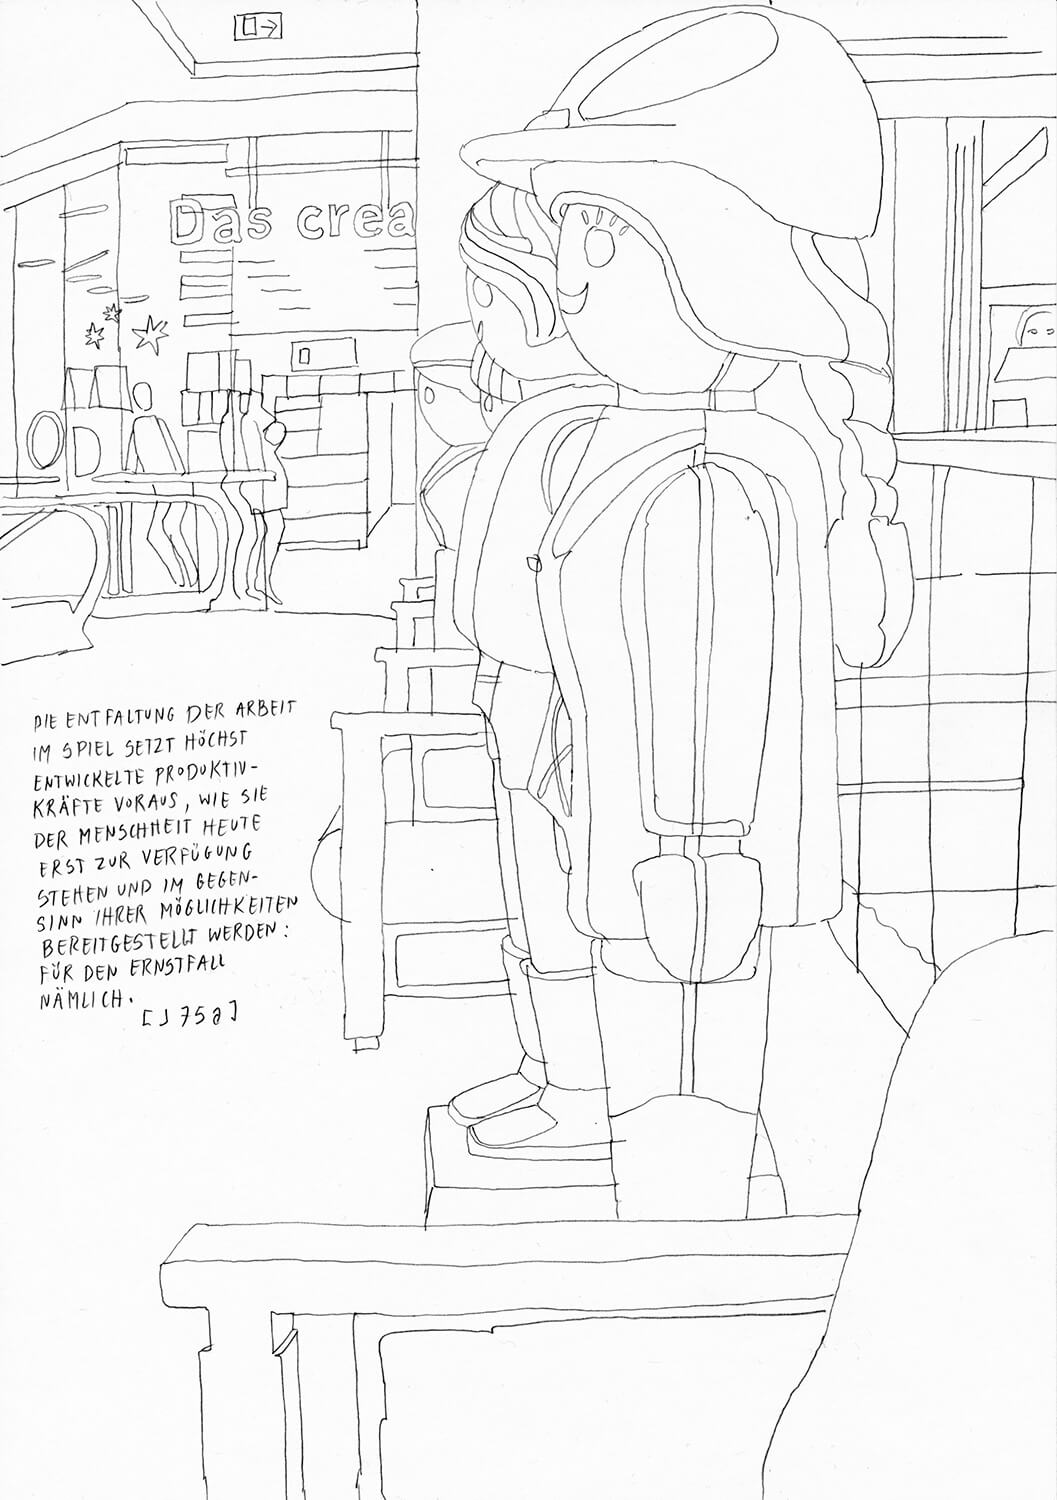 Matthias Beckmann, Passagen-Werk (109), 2019/2020, pencil on paper, 29.7 x 21 cm